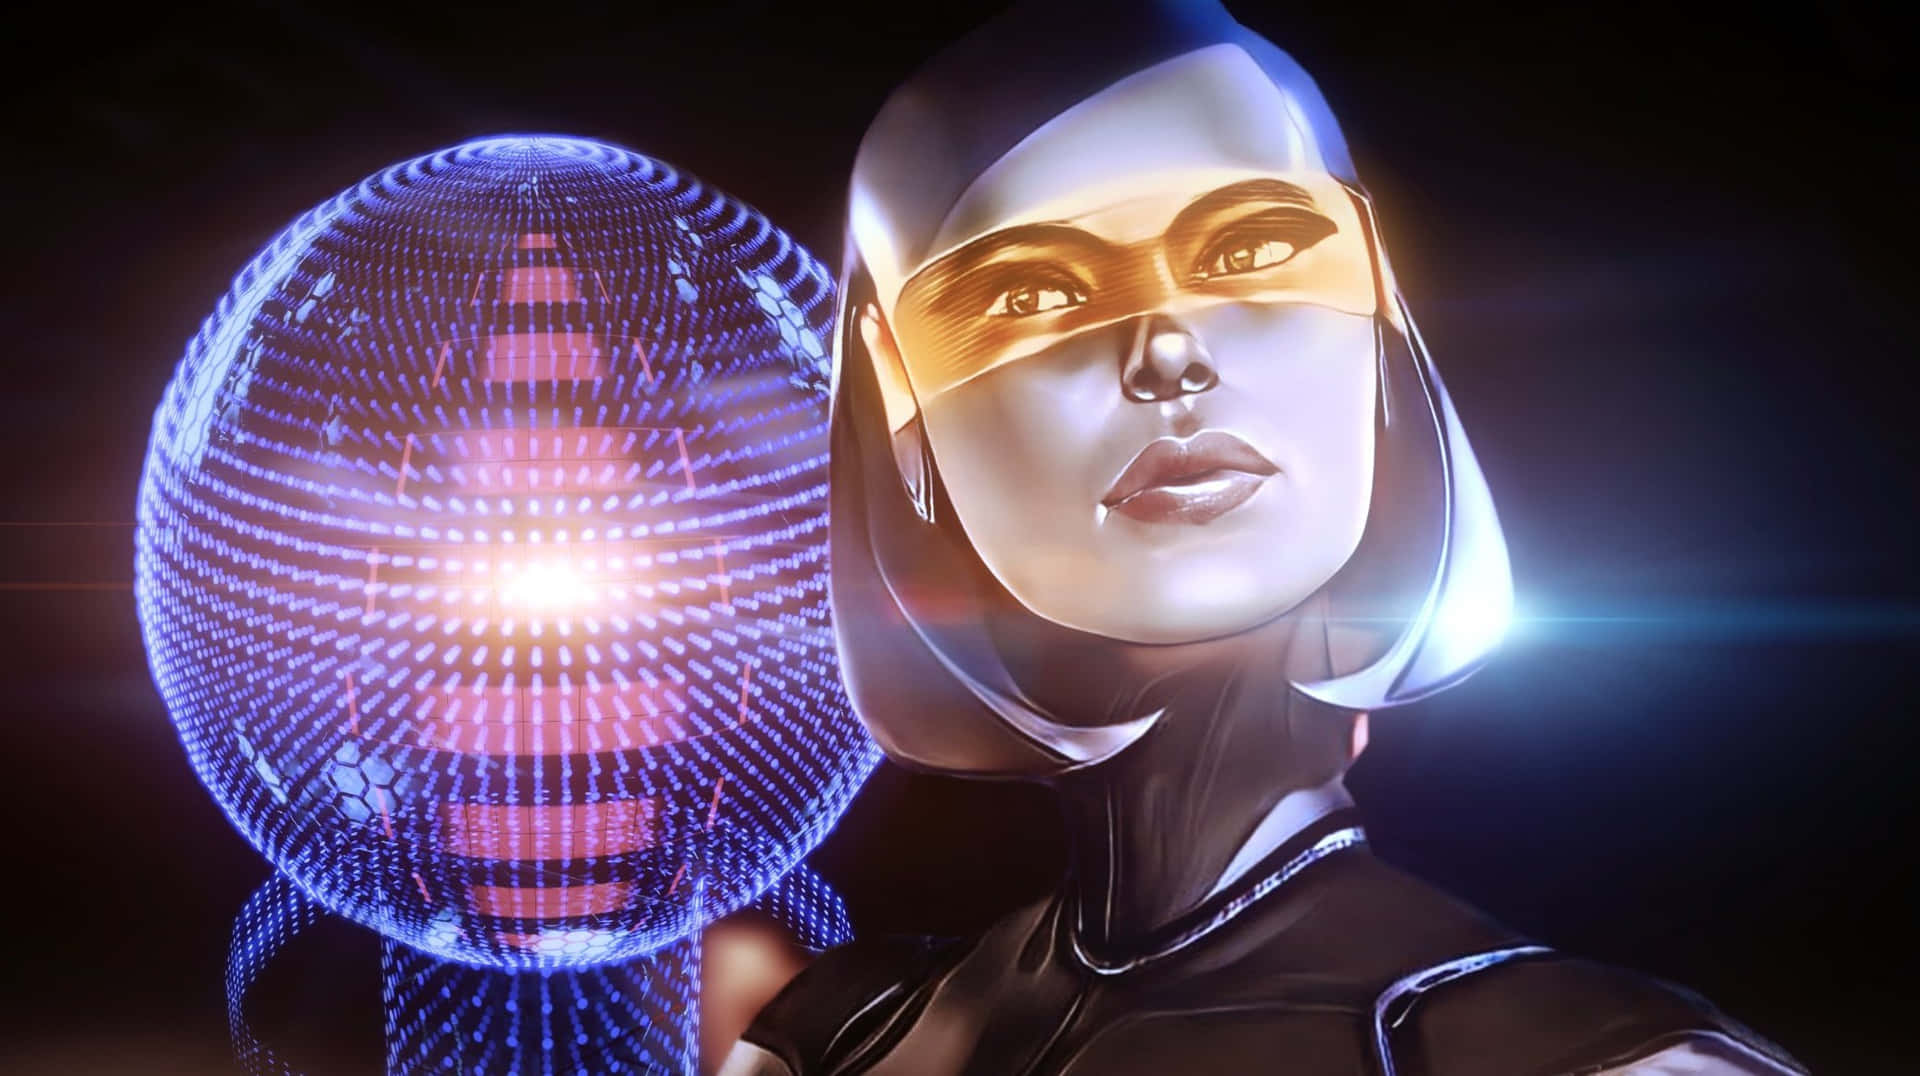 EDI, the Advanced AI Companion from Mass Effect Wallpaper